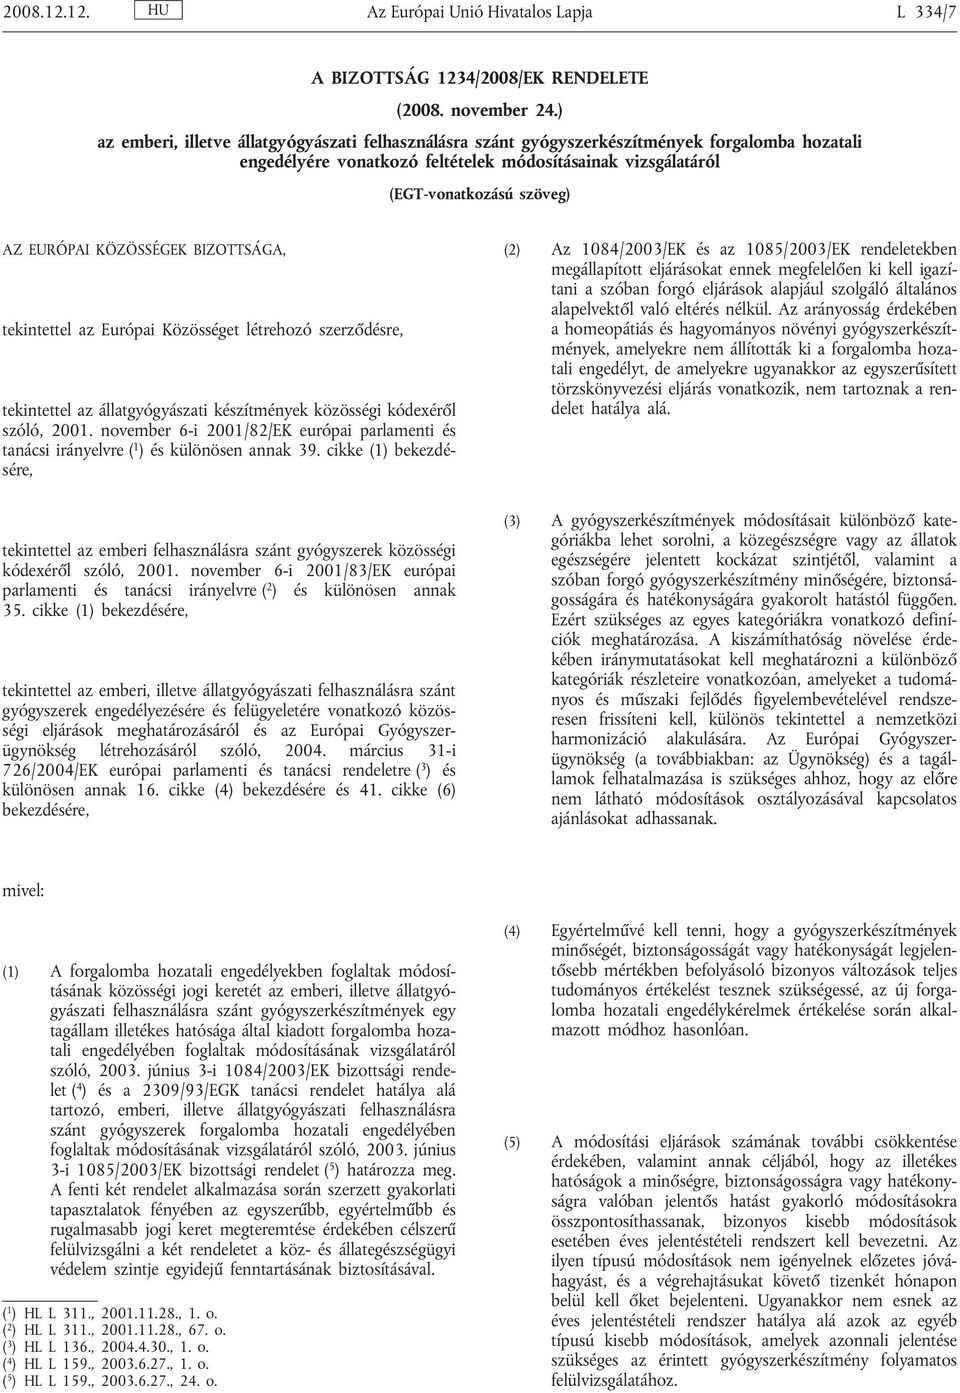 KÖZÖSSÉGEK BIZOTTSÁGA, tekintettel az Európai Közösséget létrehozó szerződésre, tekintettel az állatgyógyászati készítmények közösségi kódexéről szóló, 2001.